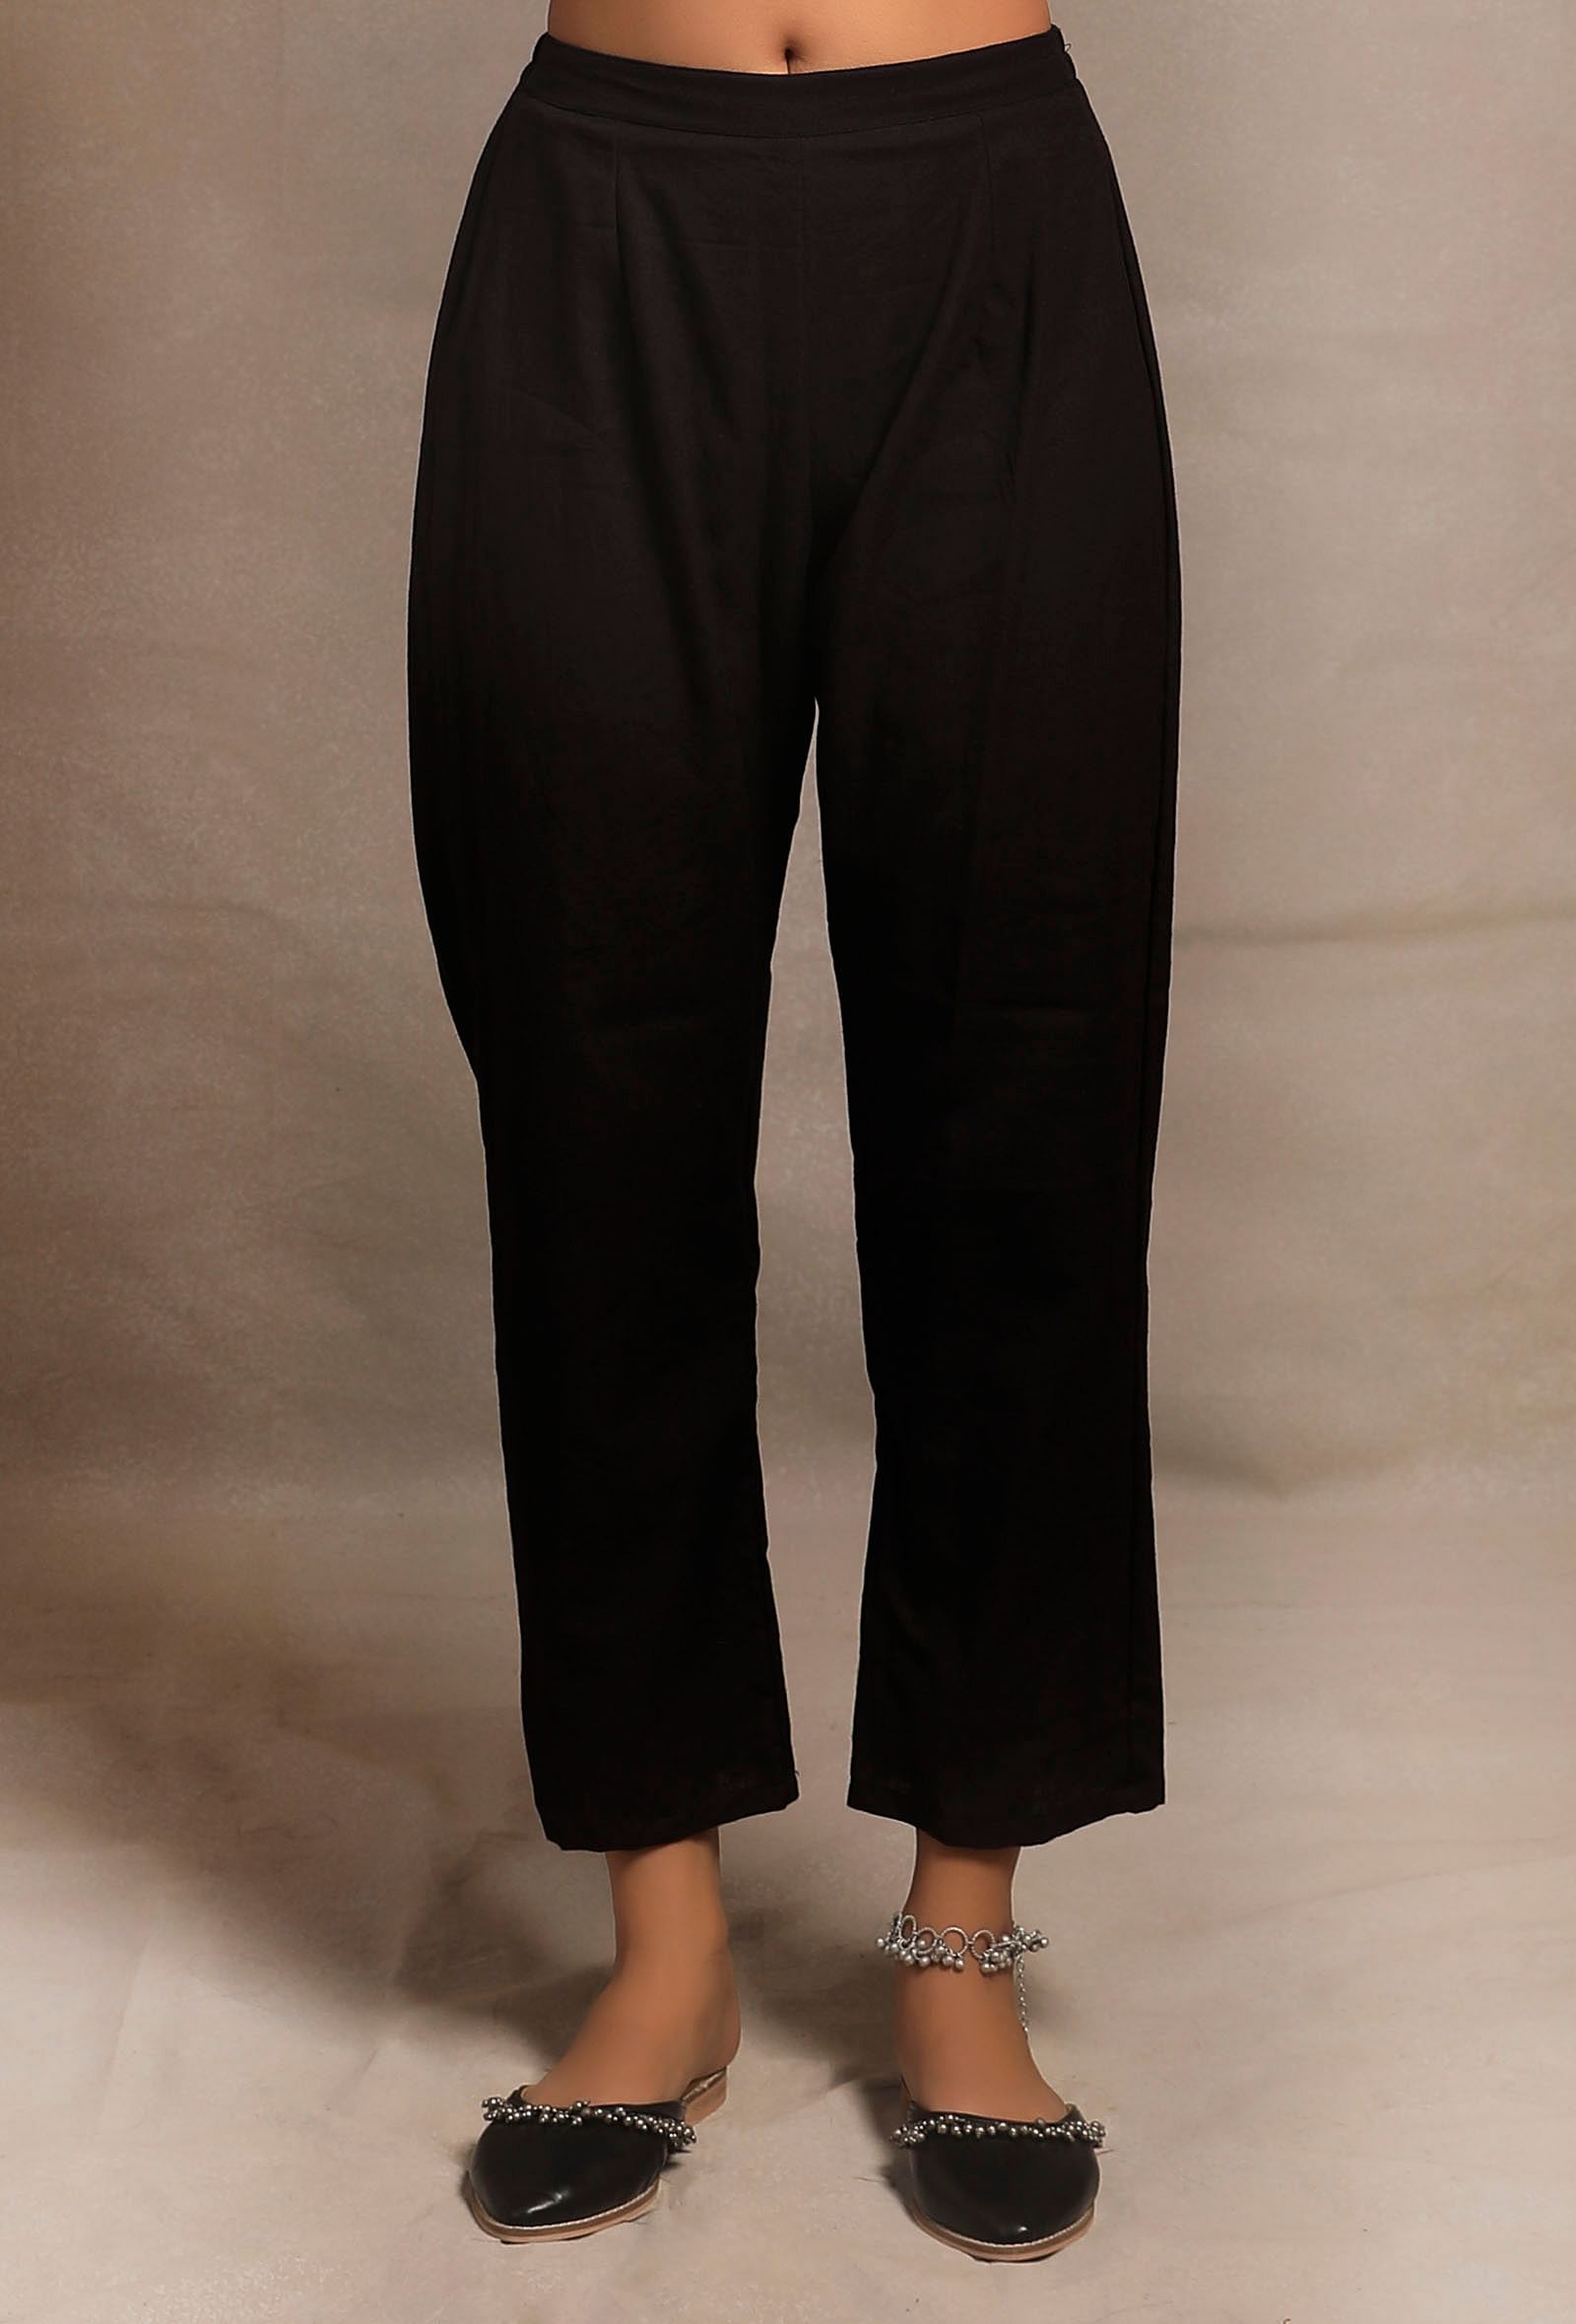 Casual Cotton Linen Pants Women Elastic Waist Vintage Printed Loose Ankle  Length Trousers Spring … | Cotton linen pants women, Linen pants women,  Casual linen pants